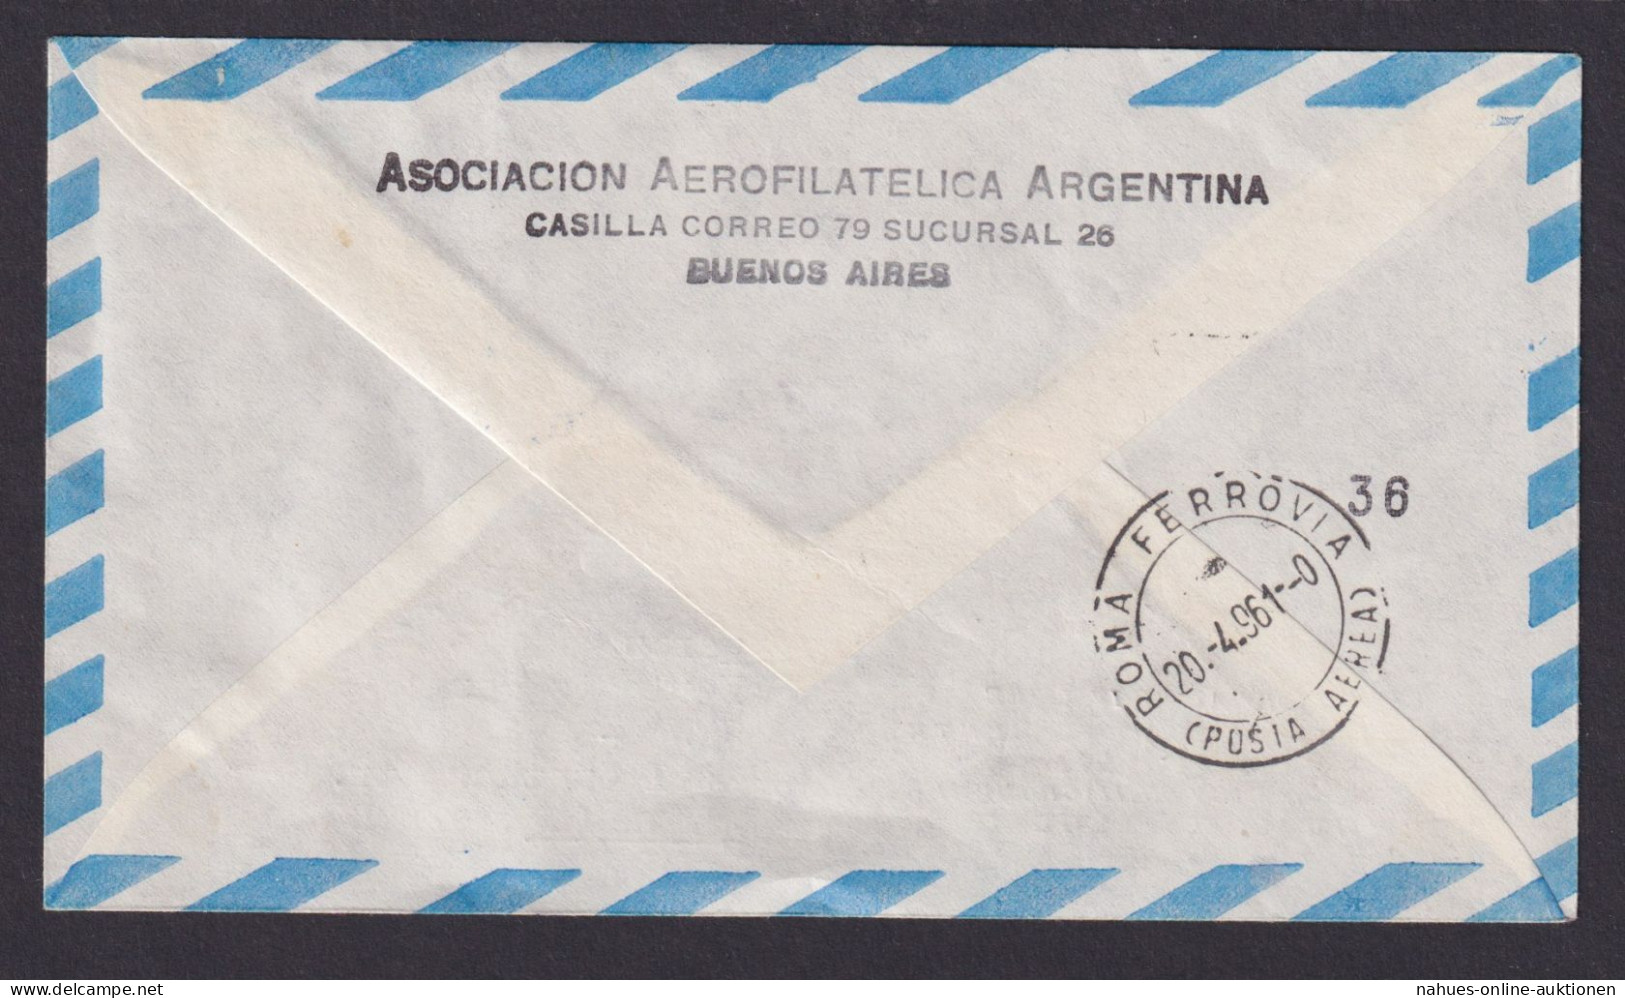 Flugpost Brief Air Mail Argentinien Alitalia Nach Jena DDR Schöner Beleg Via Rom - Briefe U. Dokumente